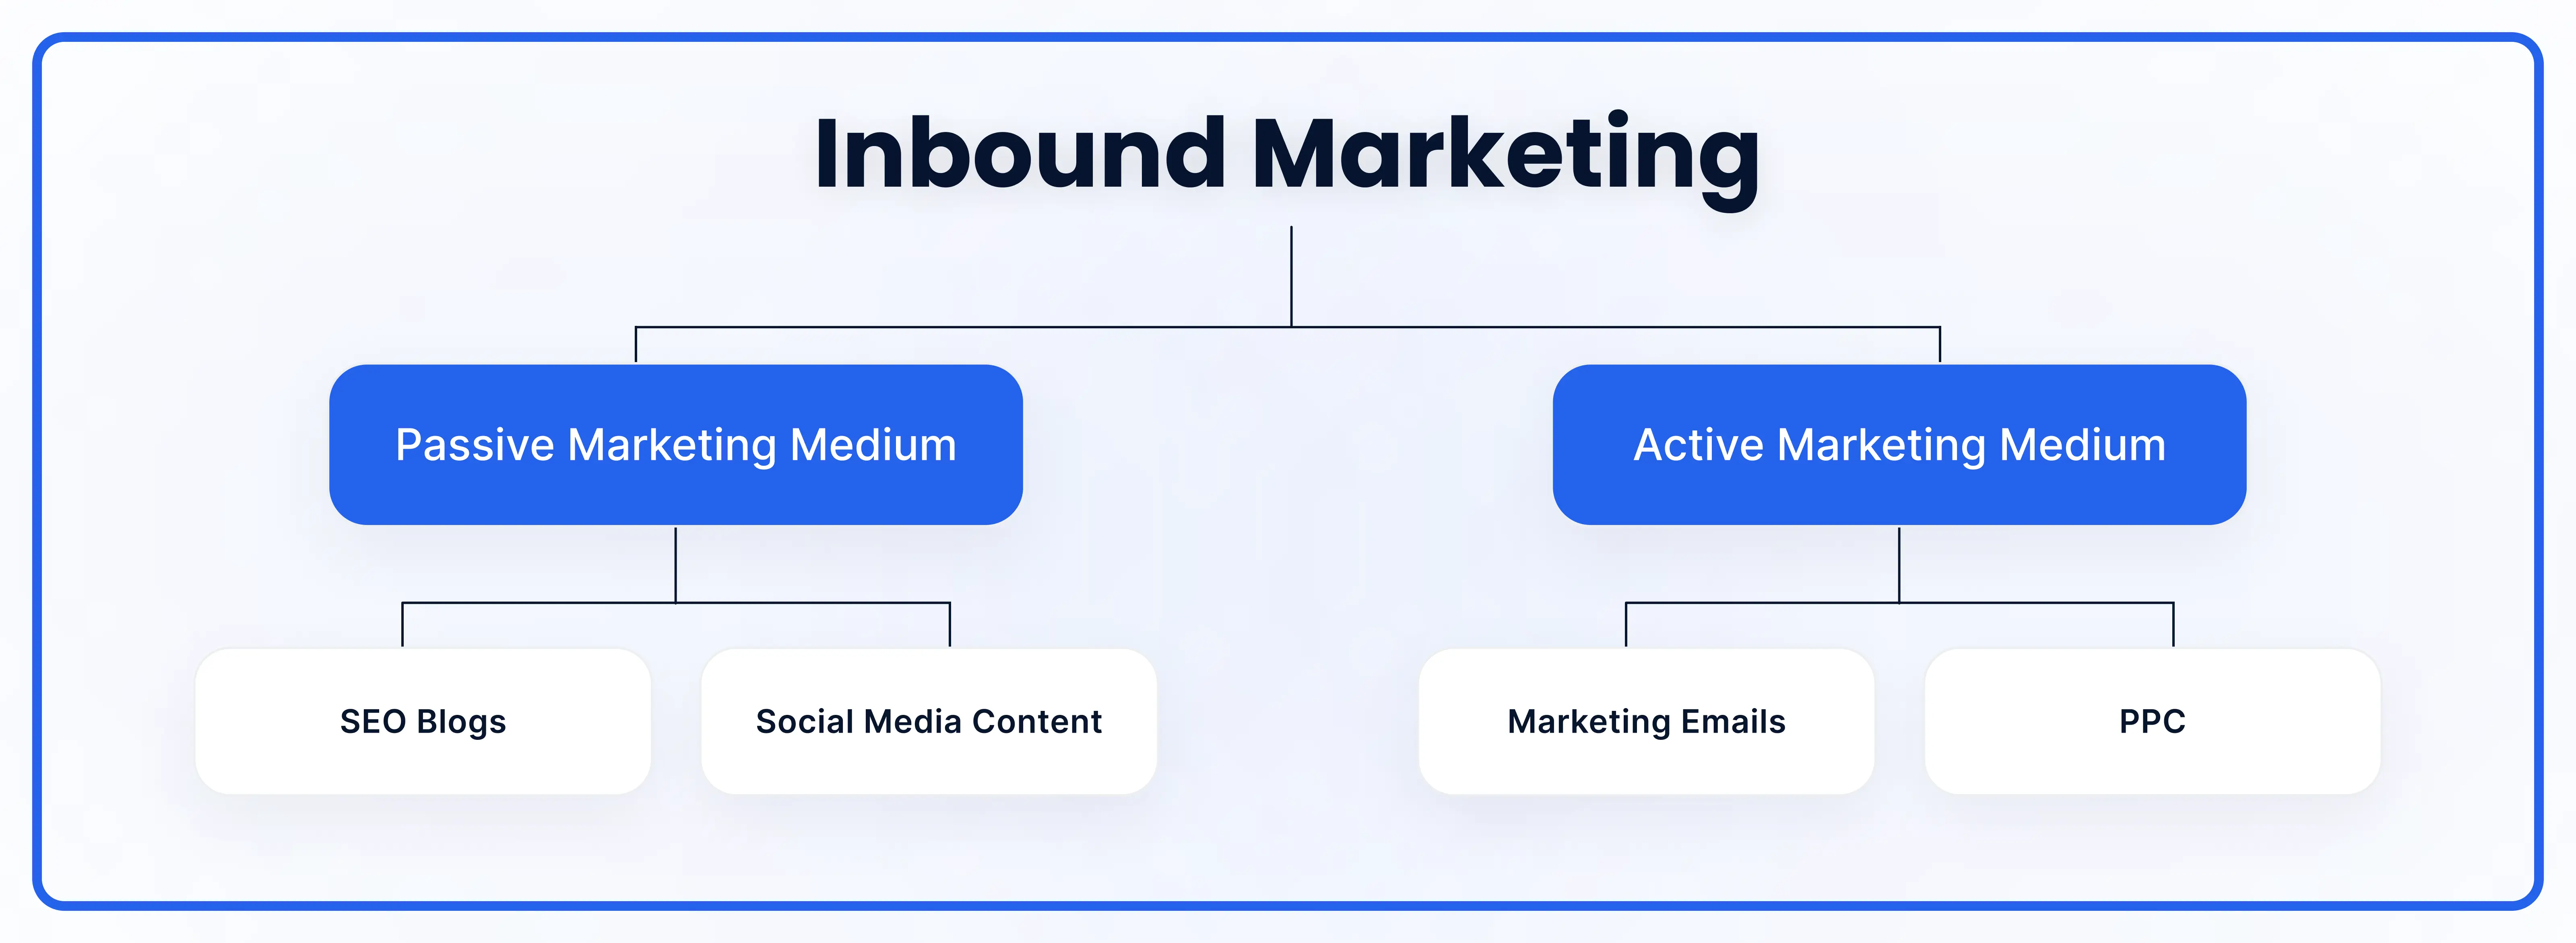 inbound marketing marketing emails (flowchart)